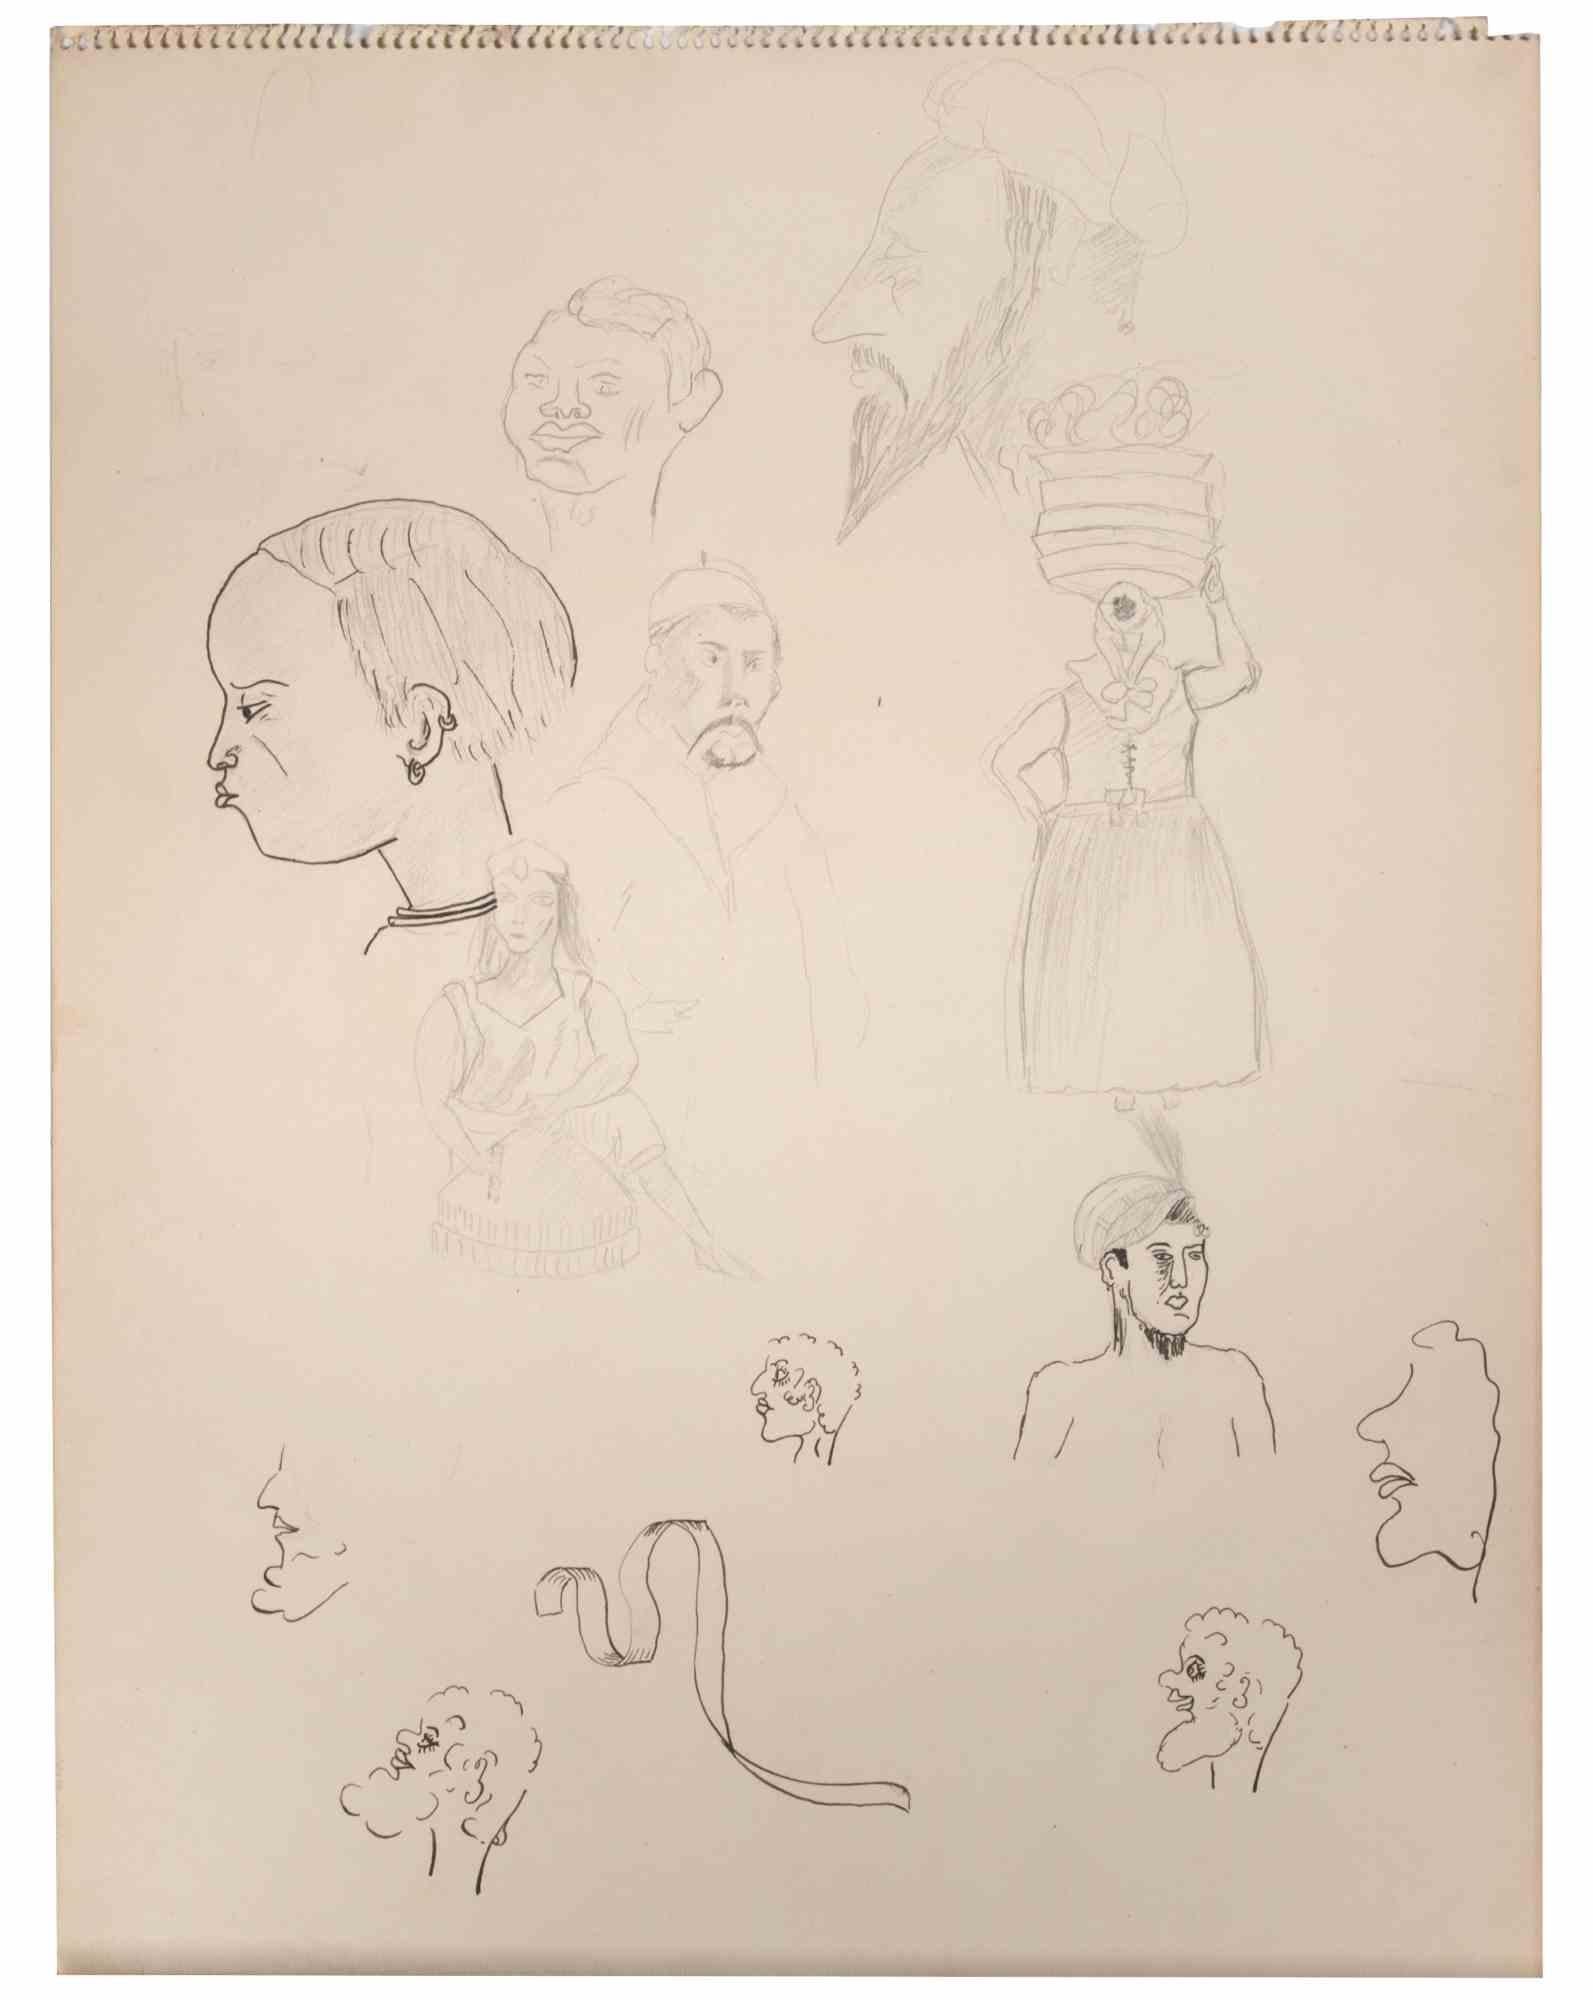 Die Figuren sind eine Zeichnung von Suzanne Tourte aus der Mitte des 20. Jahrhunderts.

Bleistift auf Papier.

In gutem Zustand.

Das Kunstwerk wird durch geschickte Striche meisterhaft dargestellt.